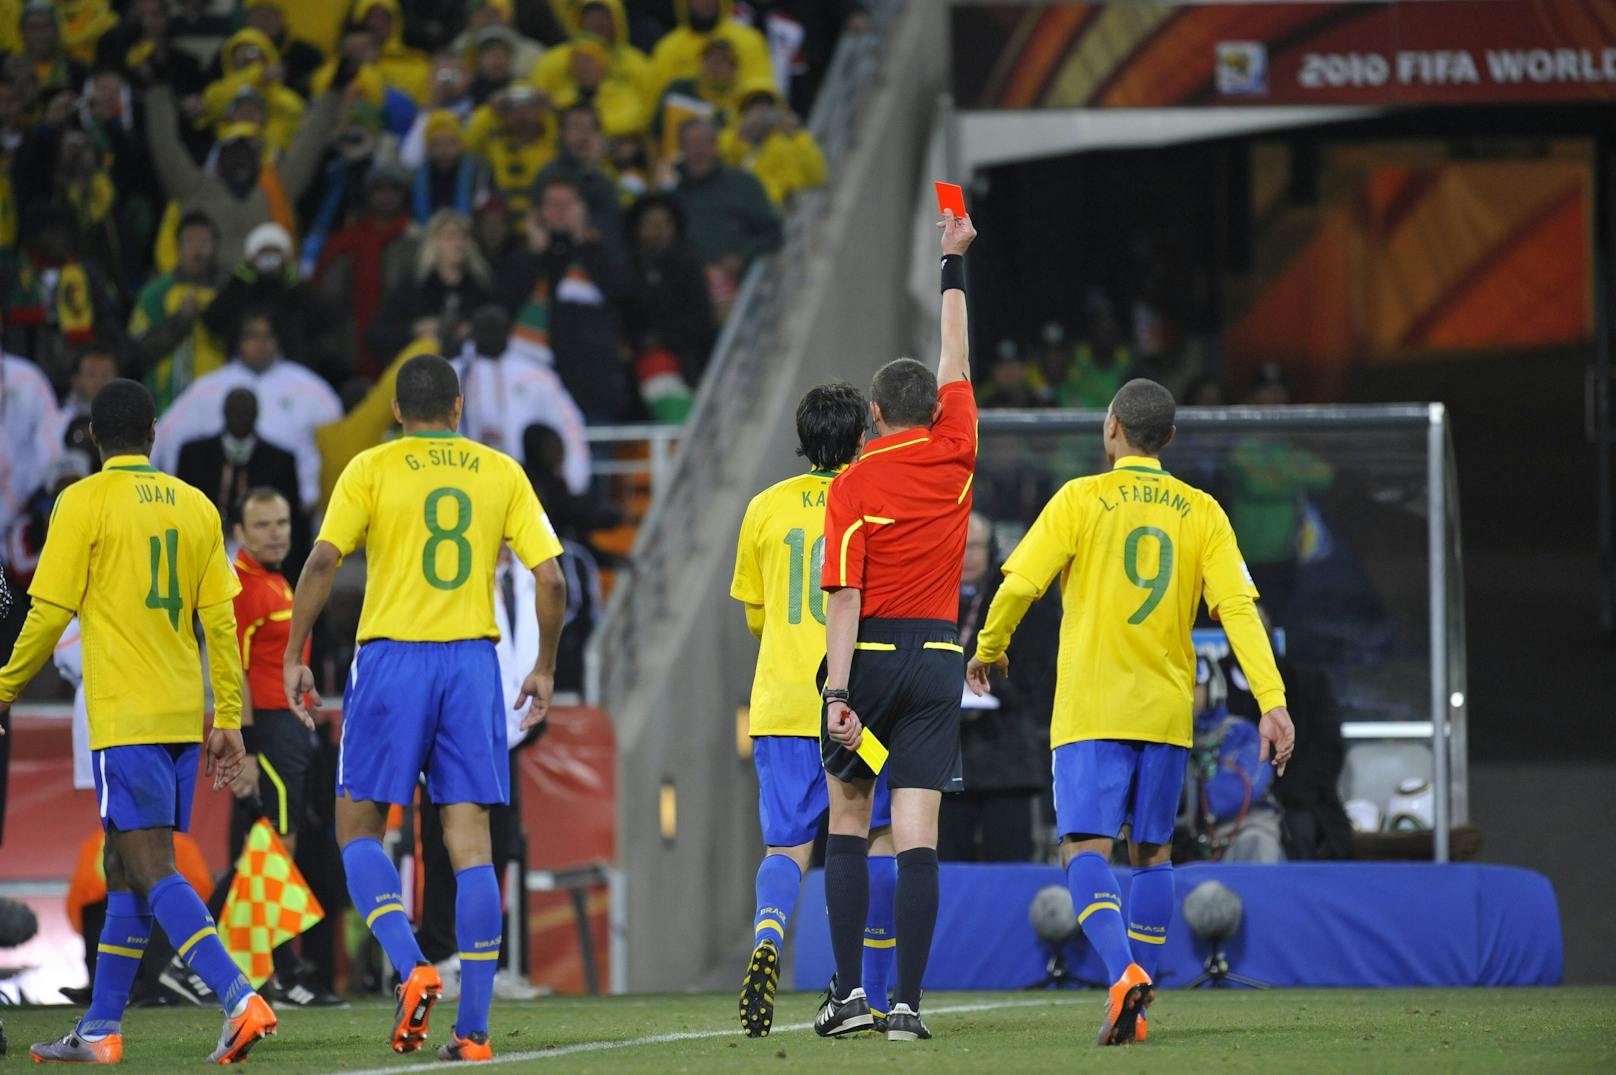 Die meisten Platzverweise: Brasilien führt das Ranking mit 11 Roten Karten an.